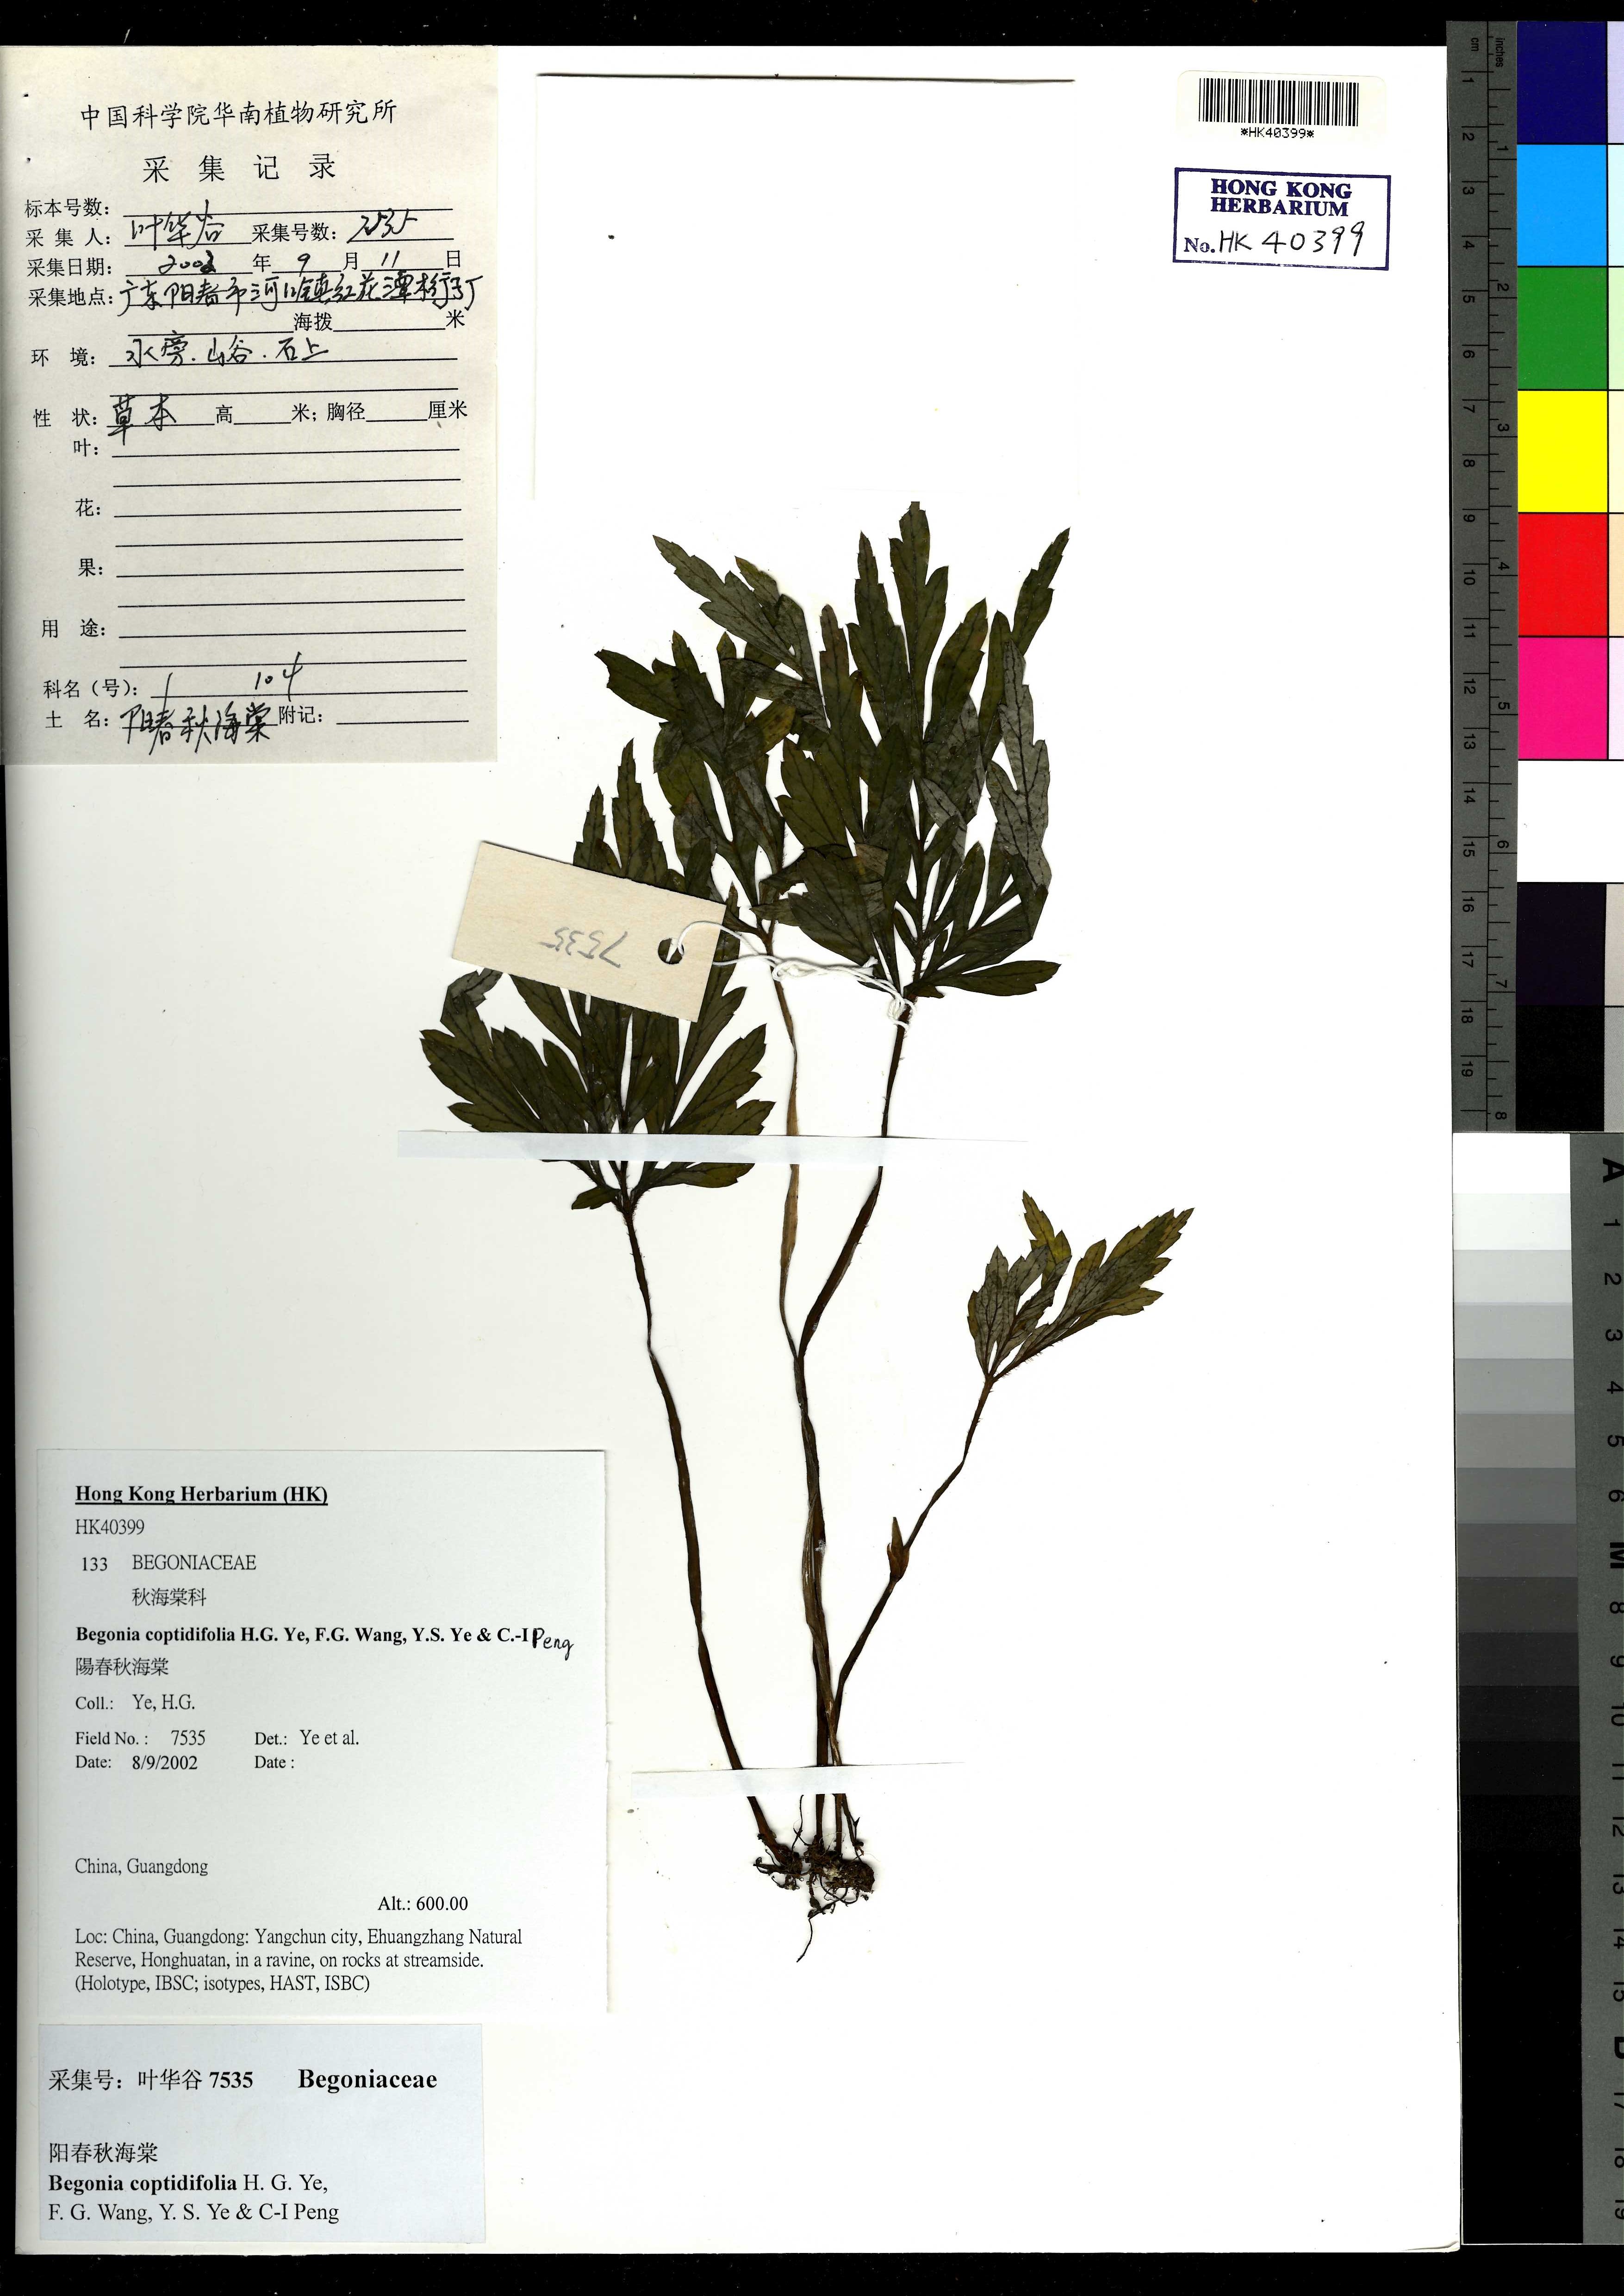  Begonia coptidifolia H.G. Ye, F.G. Wang, Y.S. Ye & C.-I Peng